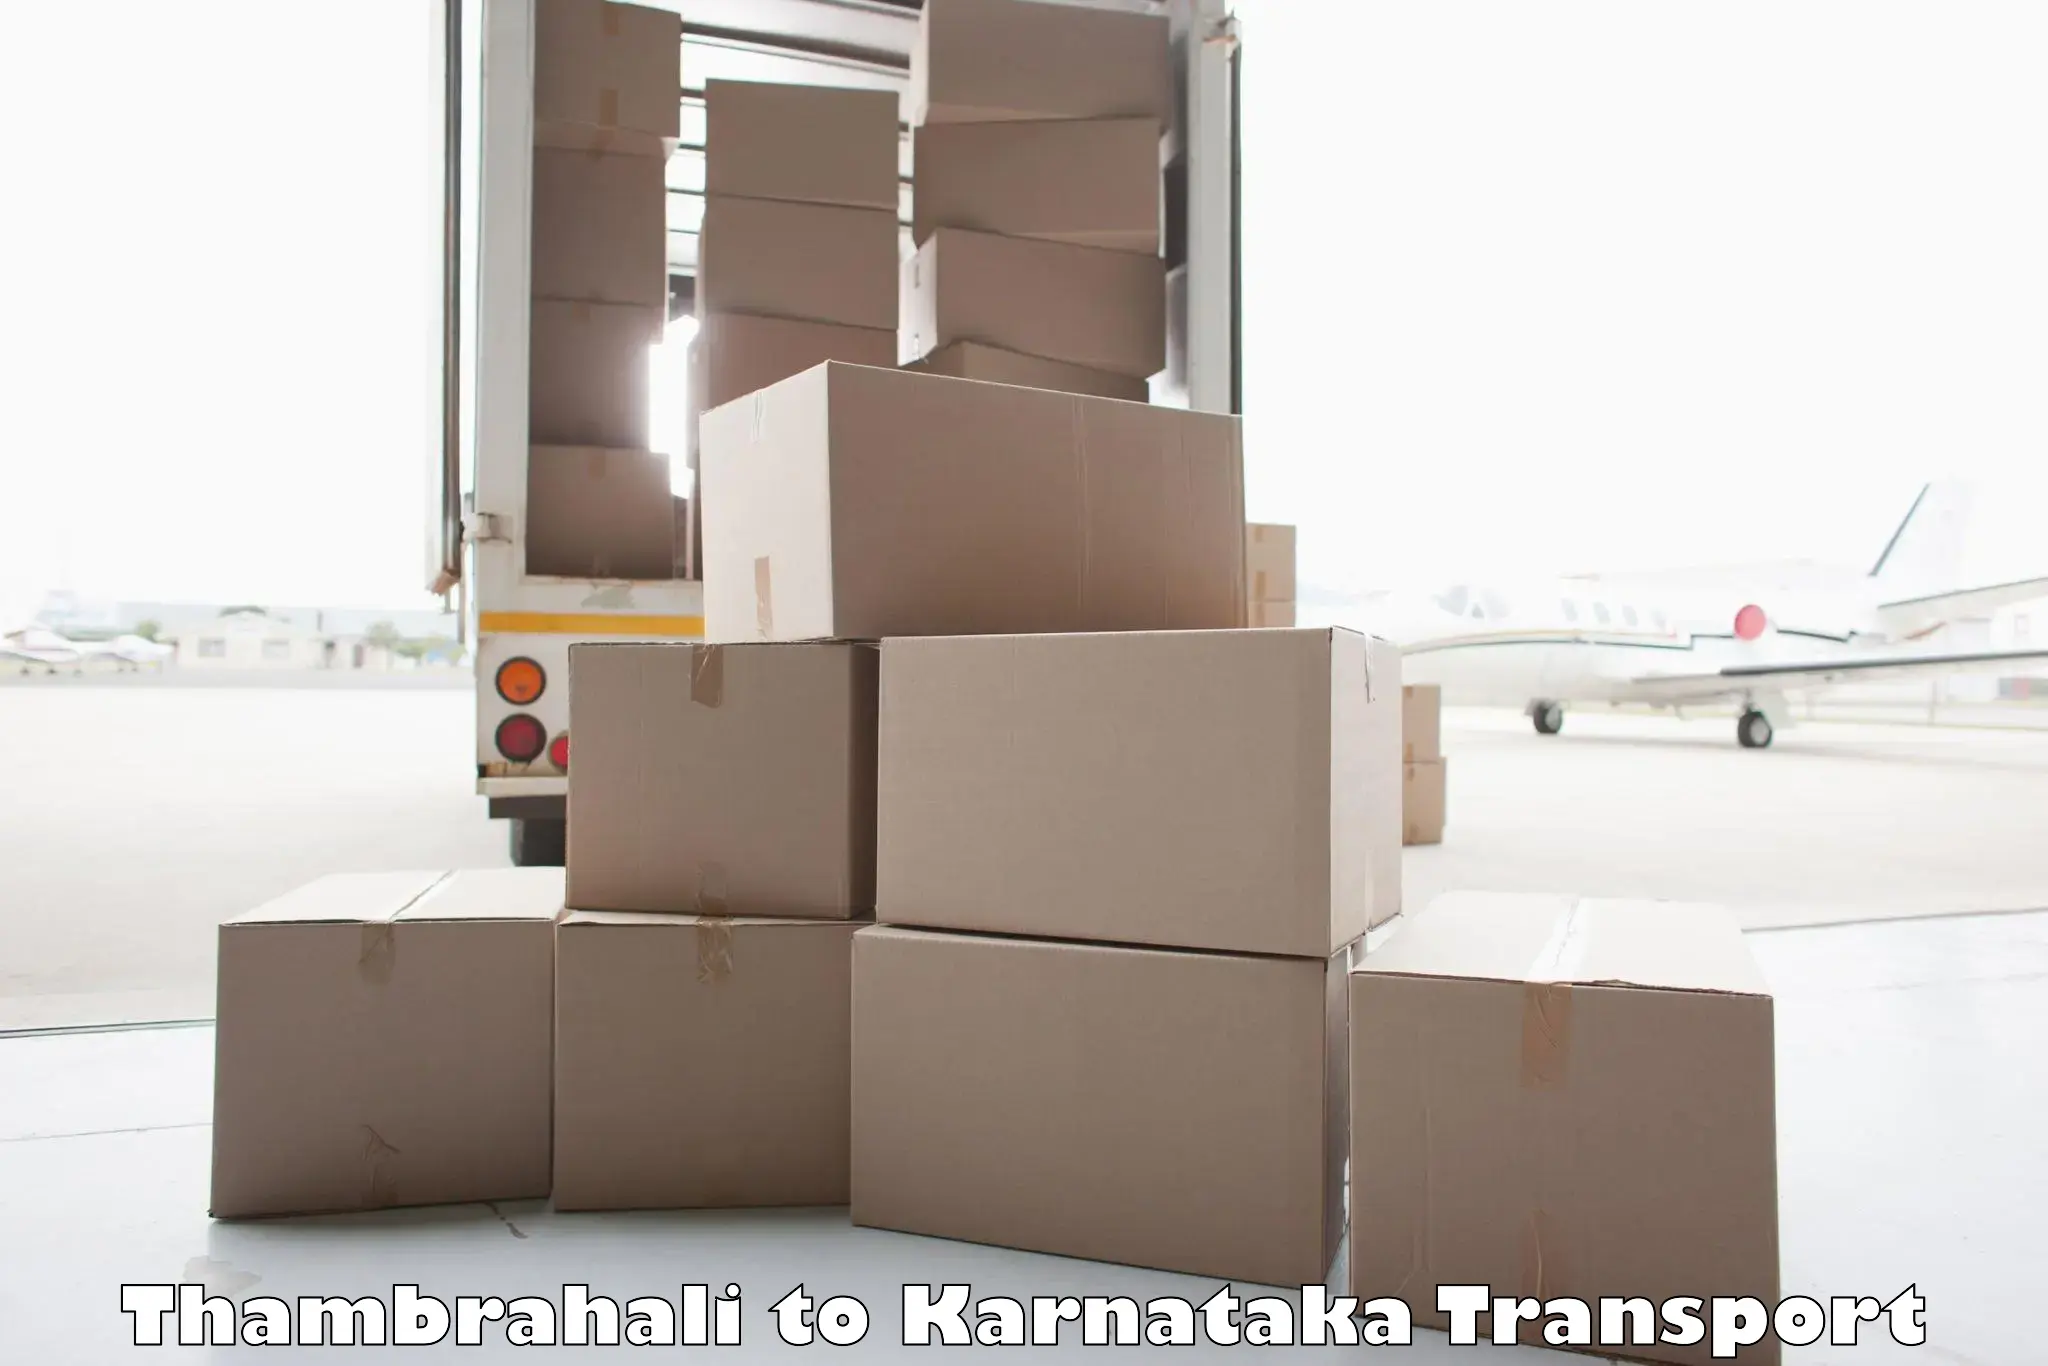 Vehicle parcel service Thambrahali to Kudligi